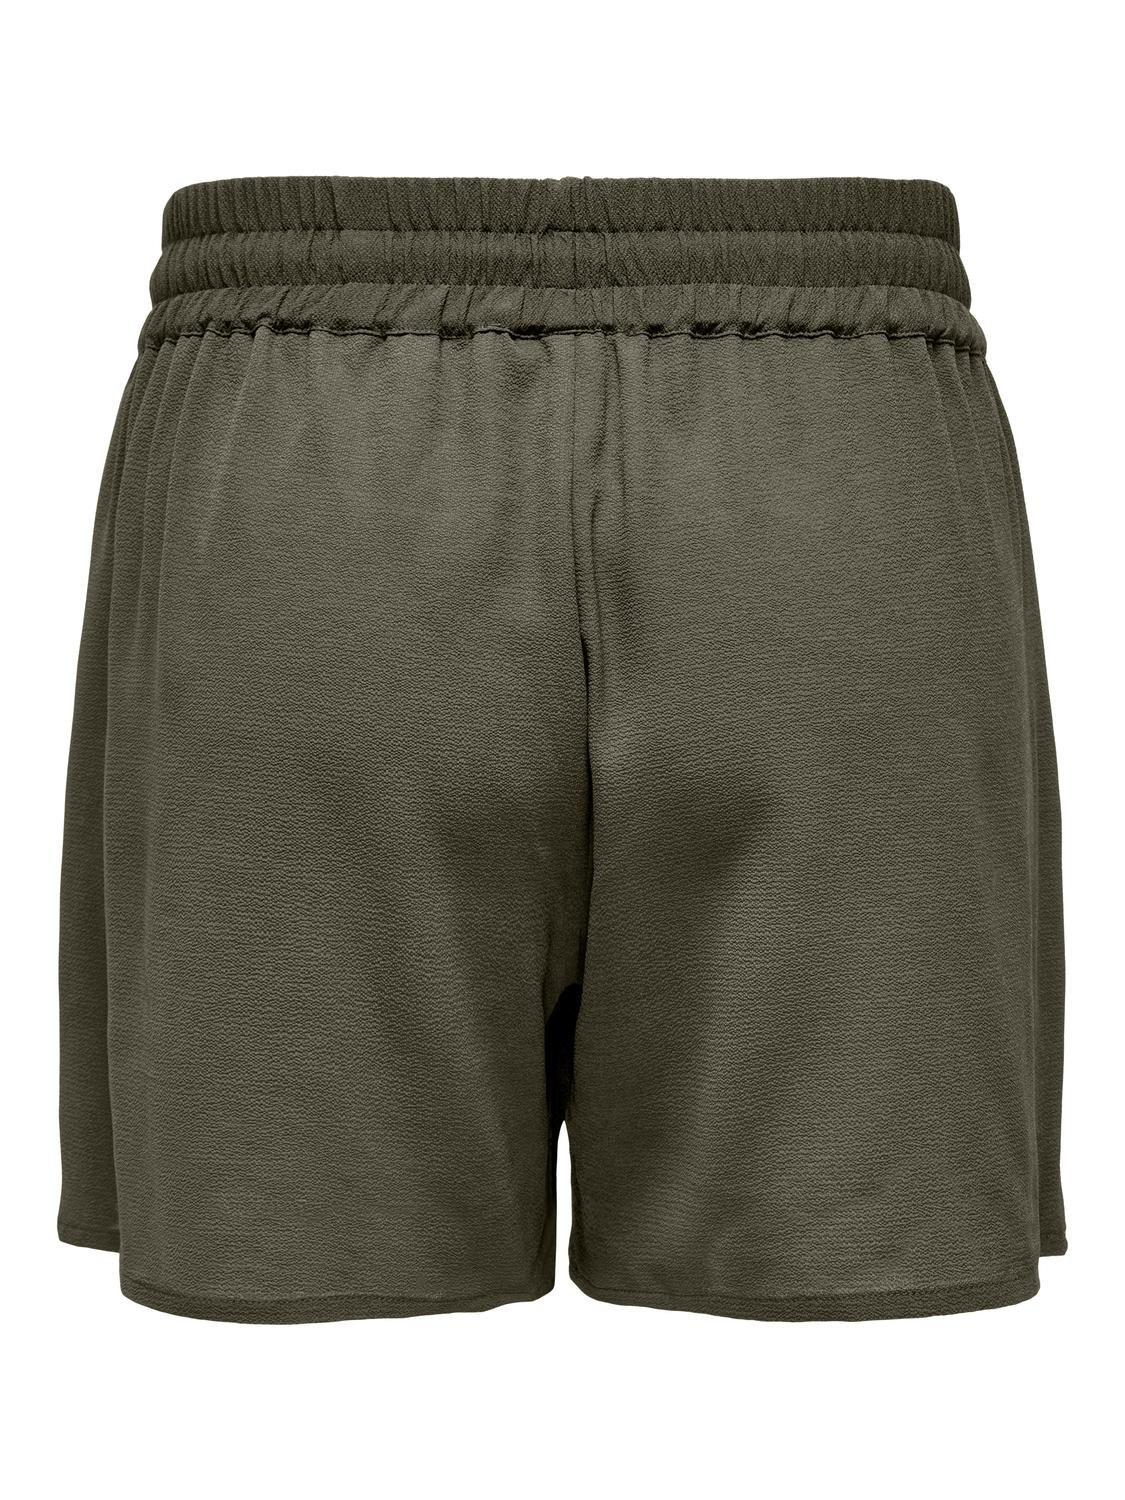 ONLY Curvy drawstring shorts -Kalamata - 15312230